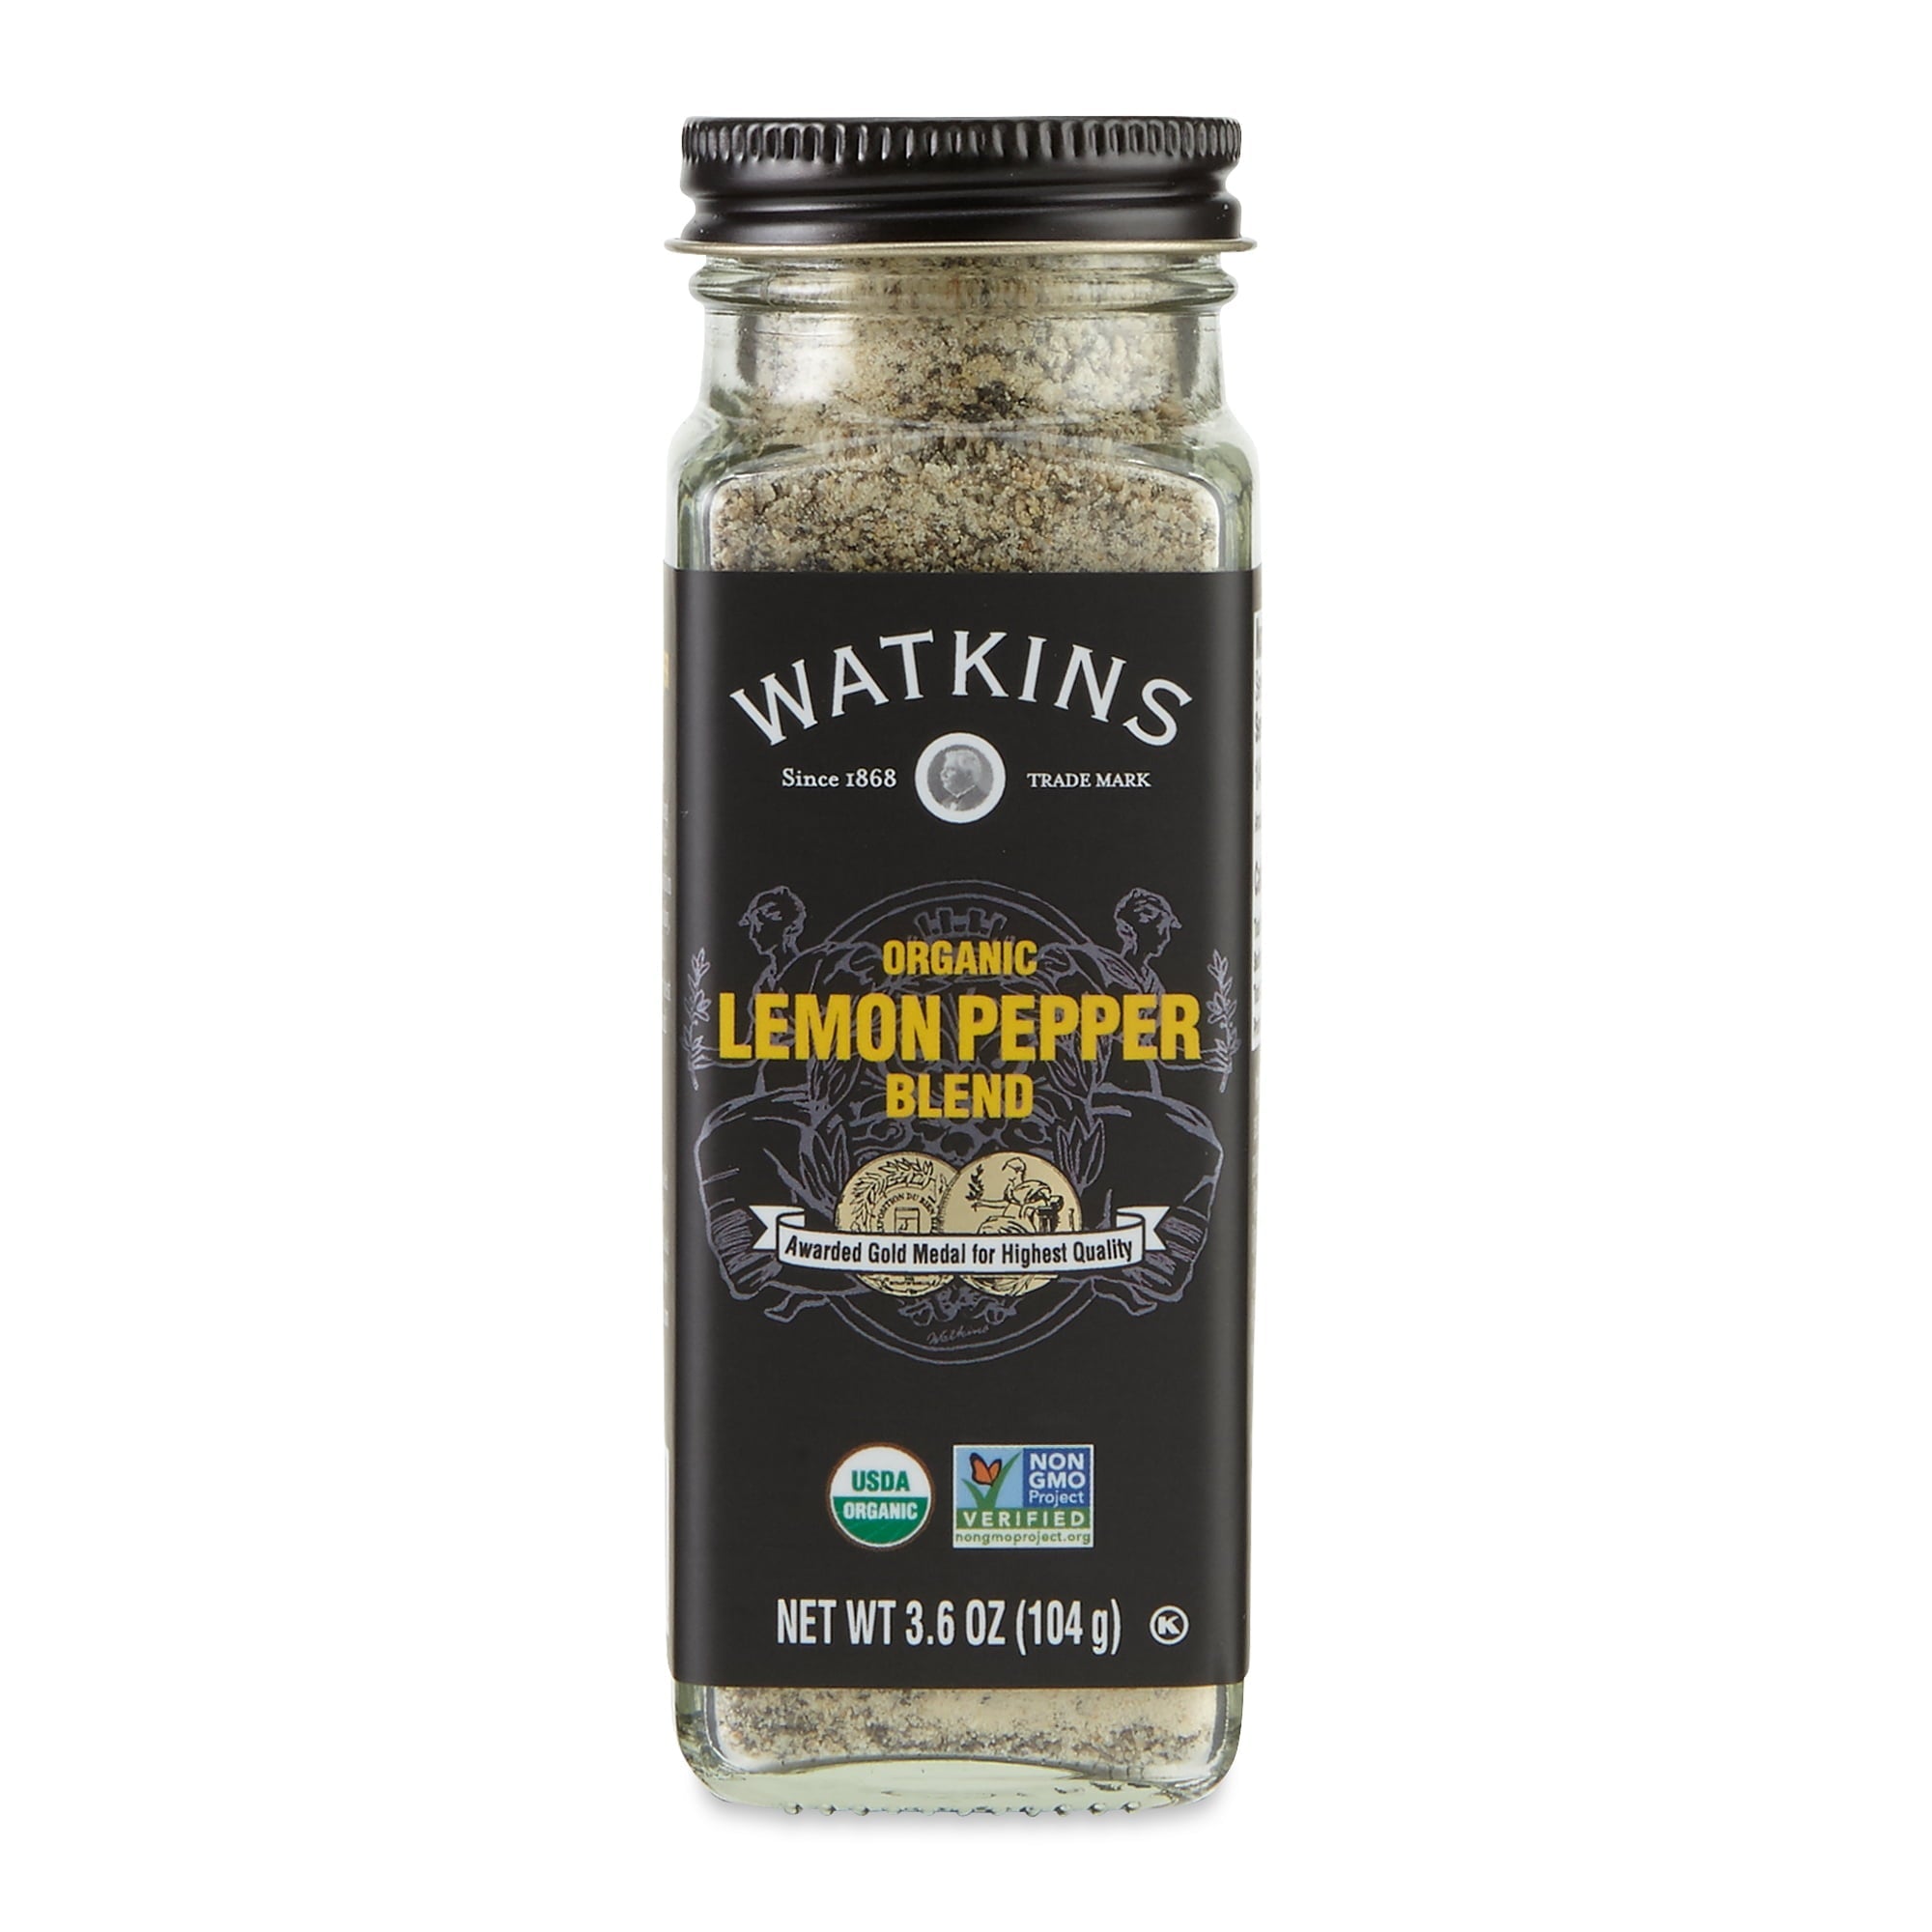 Watkins Gourmet Organic Spice Lemon Pepper Blend 3.6 oz